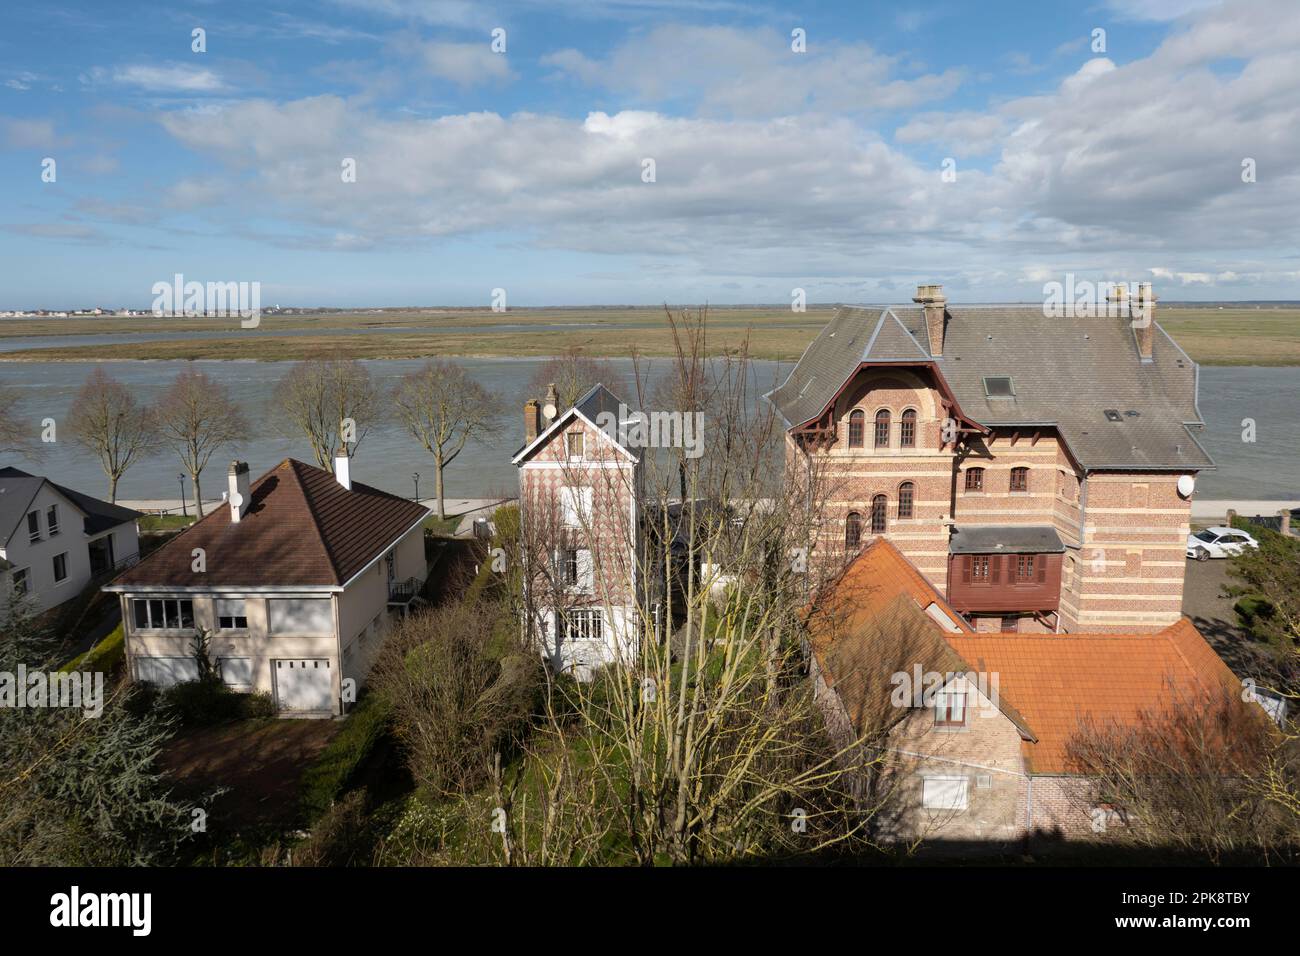 Maisons au bord de la baie de la somme et de l'estuaire avec vue sur le Crotoy, St-Valery-sur-somme, hauts-de-France, France, Europe Banque D'Images